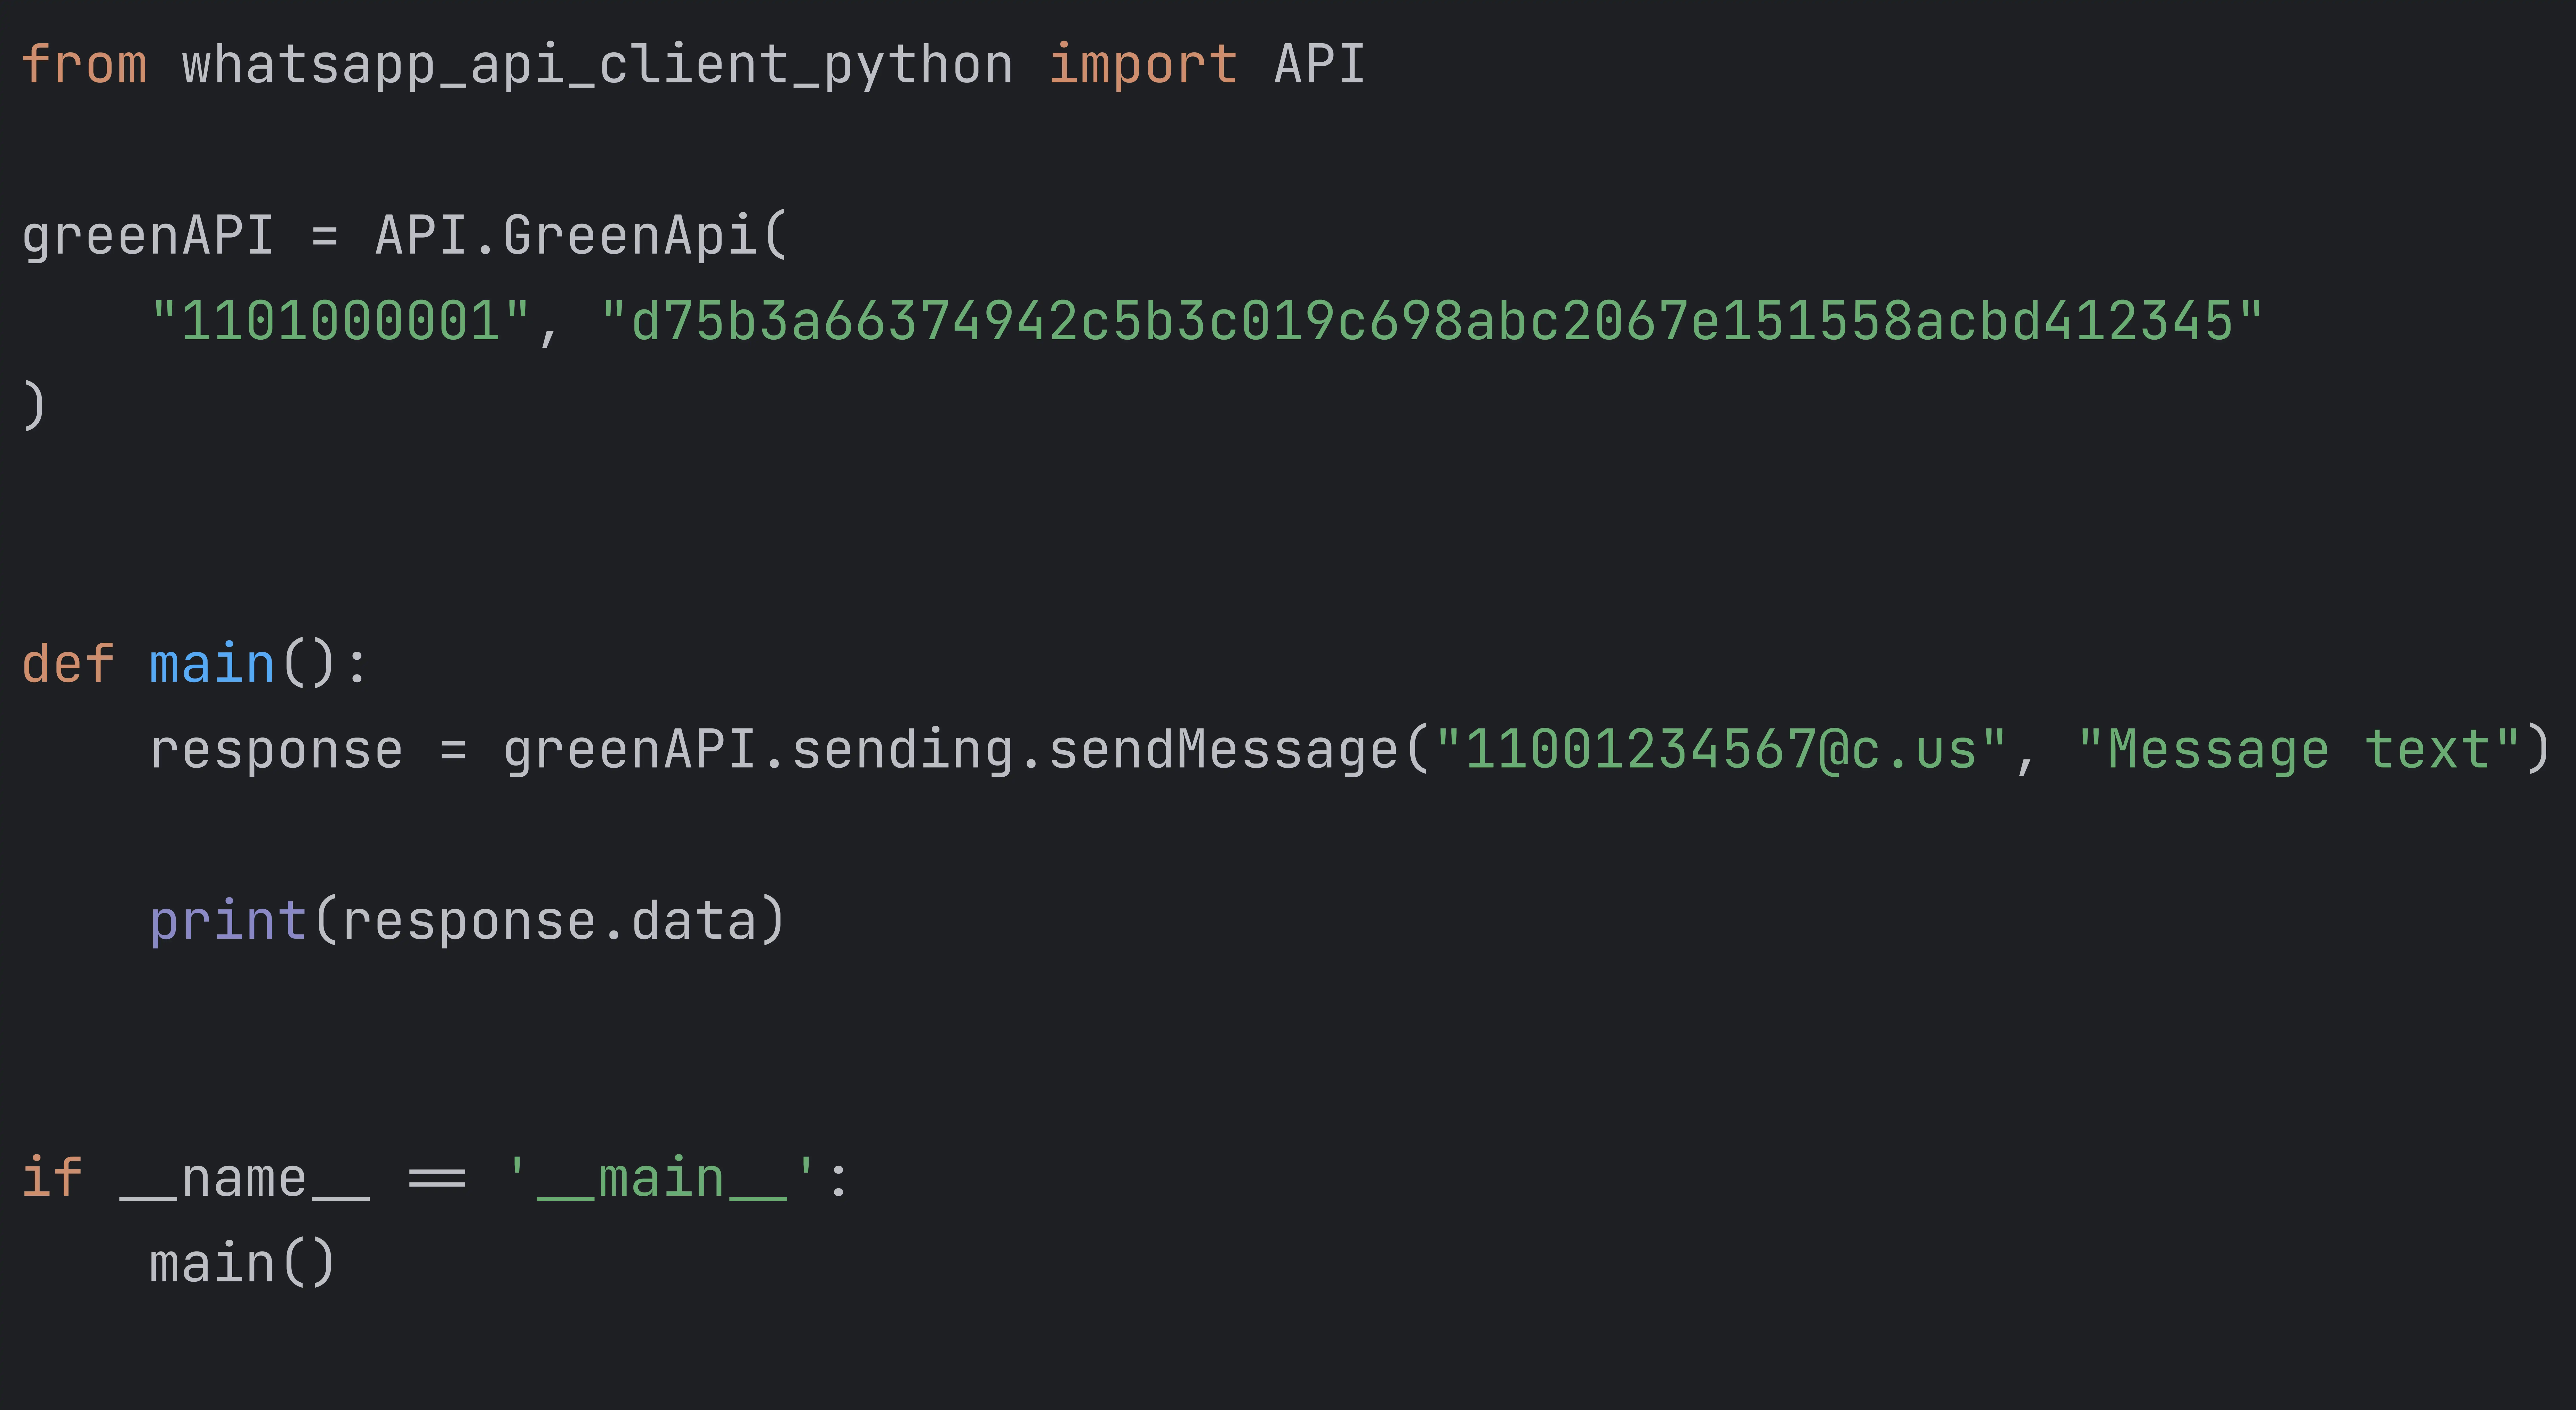 تنزيل أداة الويب أو تطبيق الويب whatsapp-api-client-python